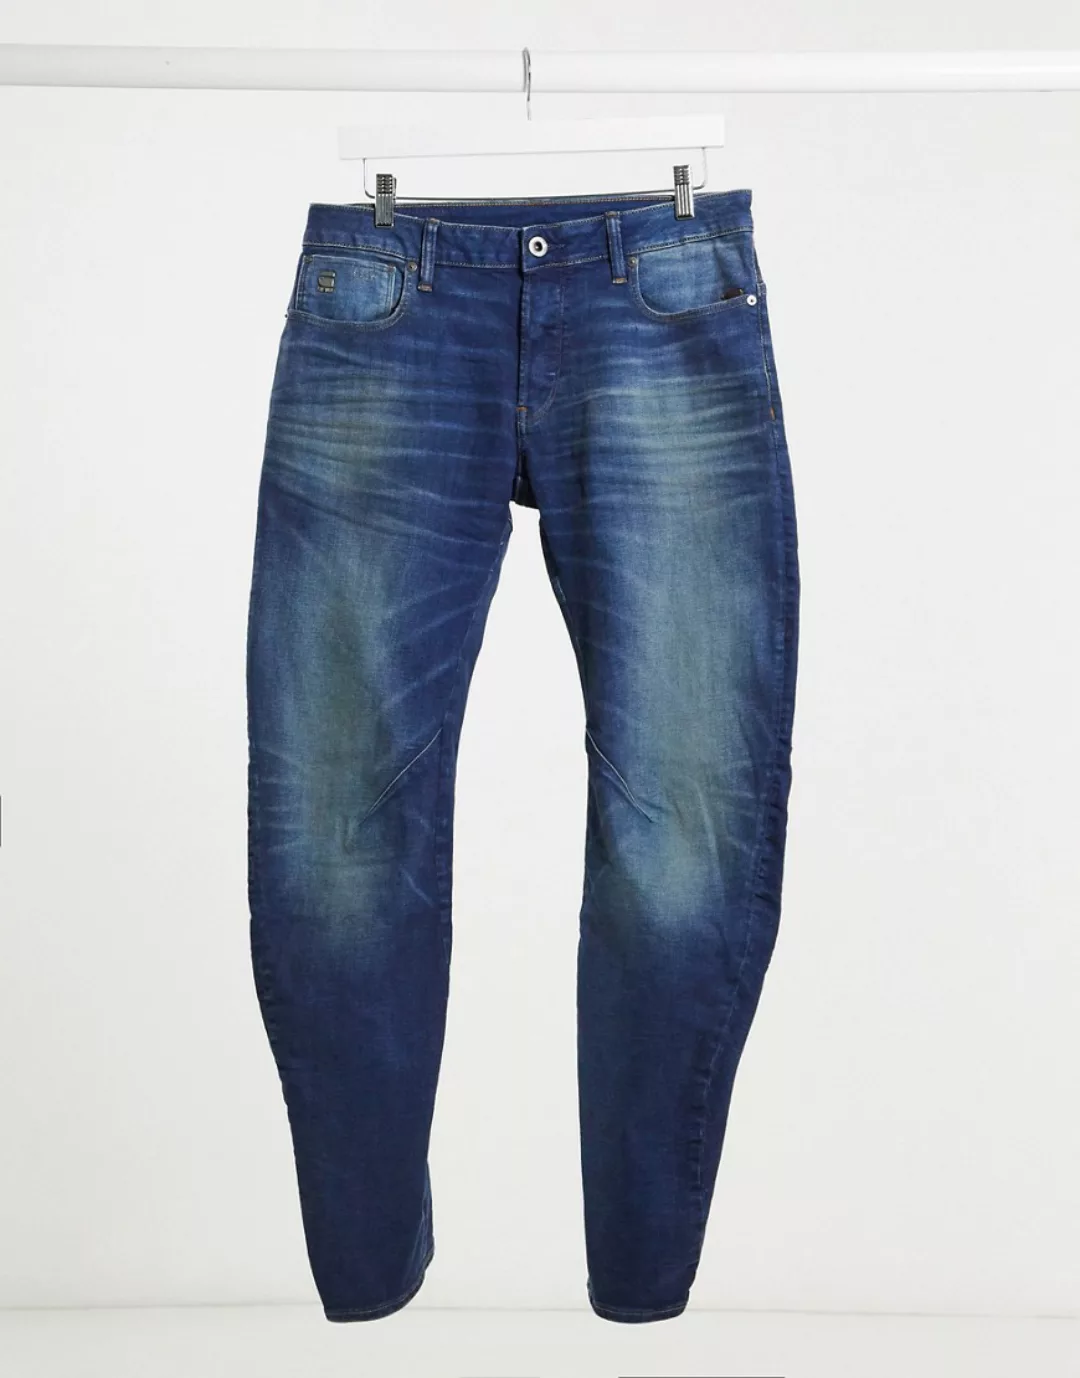 G-star D-staq 5 Pocket Slim Jeans 30 Light Indigo Aged günstig online kaufen